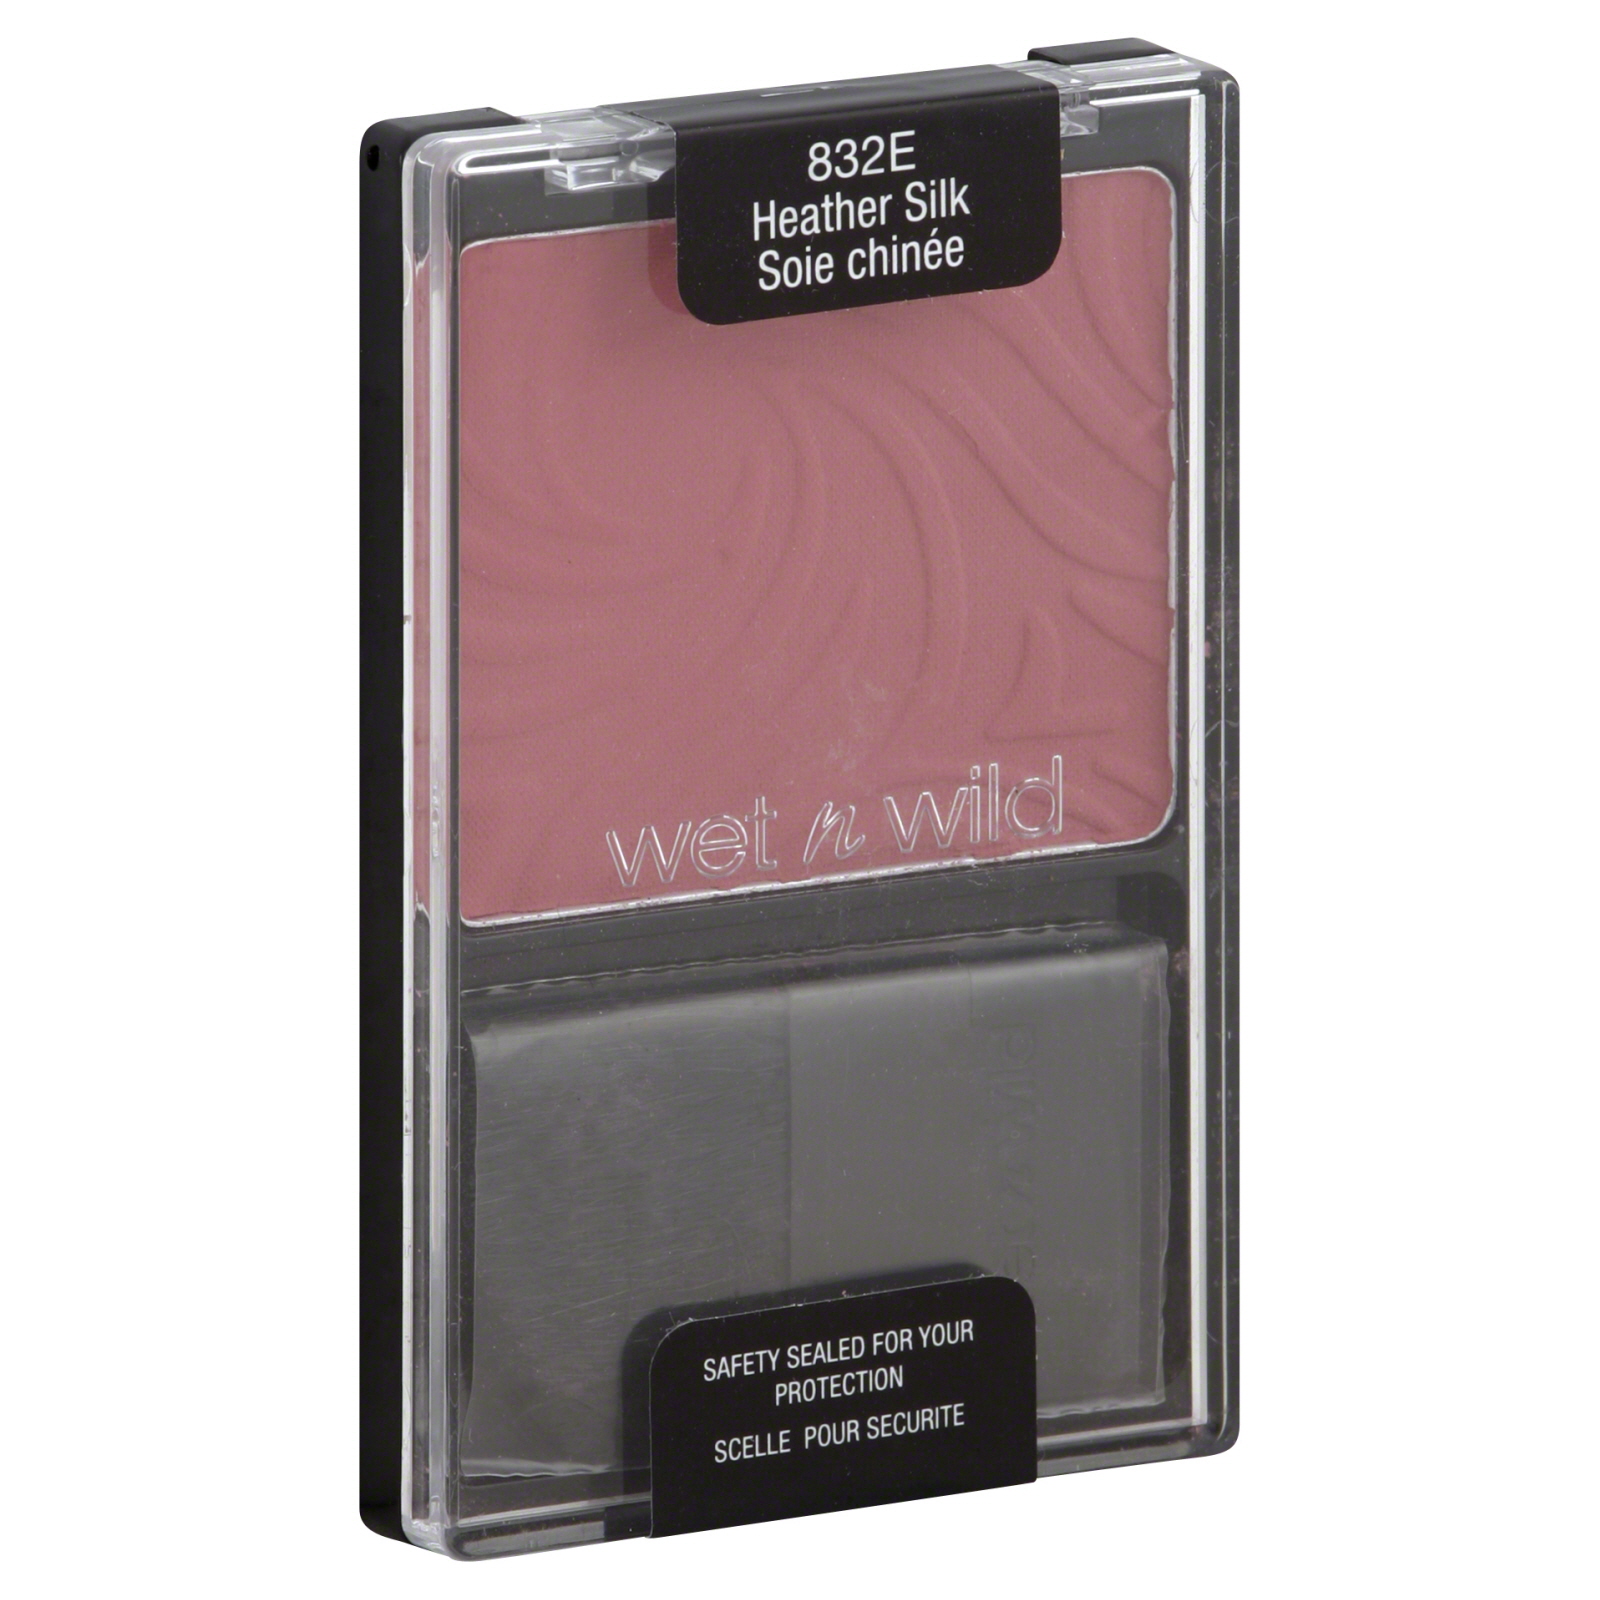 Wet n Wild ColorIcon Blusher, Heather Silk 832E, 0.14 oz (4 g)